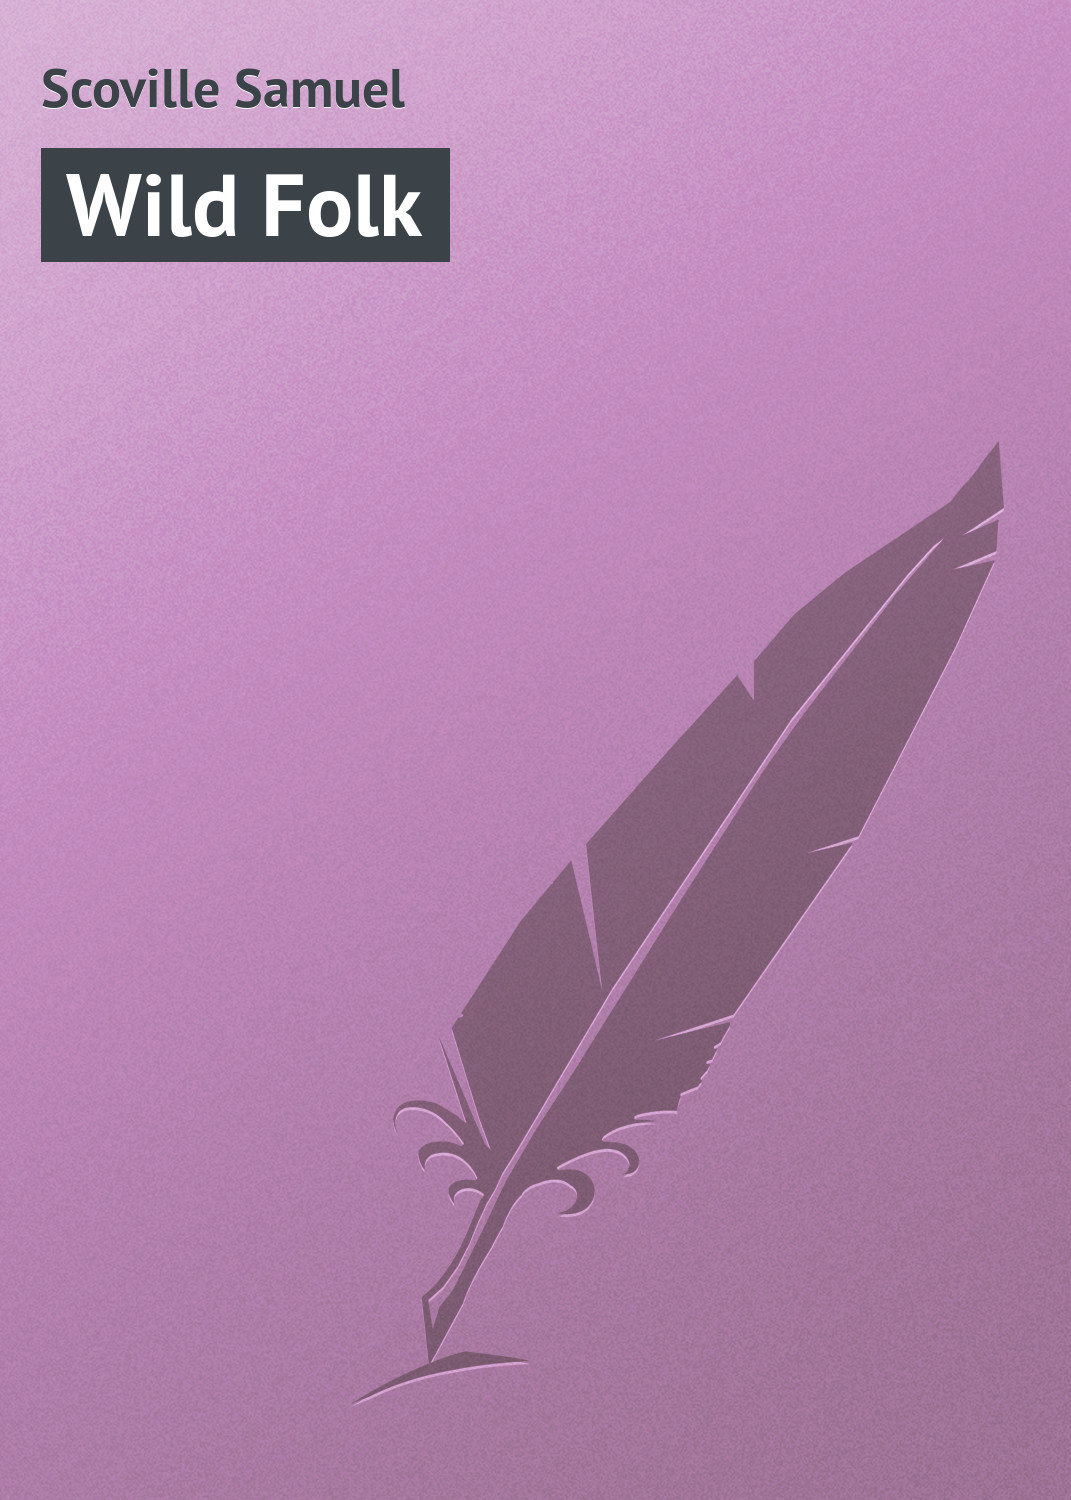 Книга Wild Folk из серии , созданная Samuel Scoville, может относится к жанру Природа и животные, Зарубежная классика, Зарубежный юмор, Анекдоты. Стоимость книги Wild Folk  с идентификатором 23161459 составляет 5.99 руб.